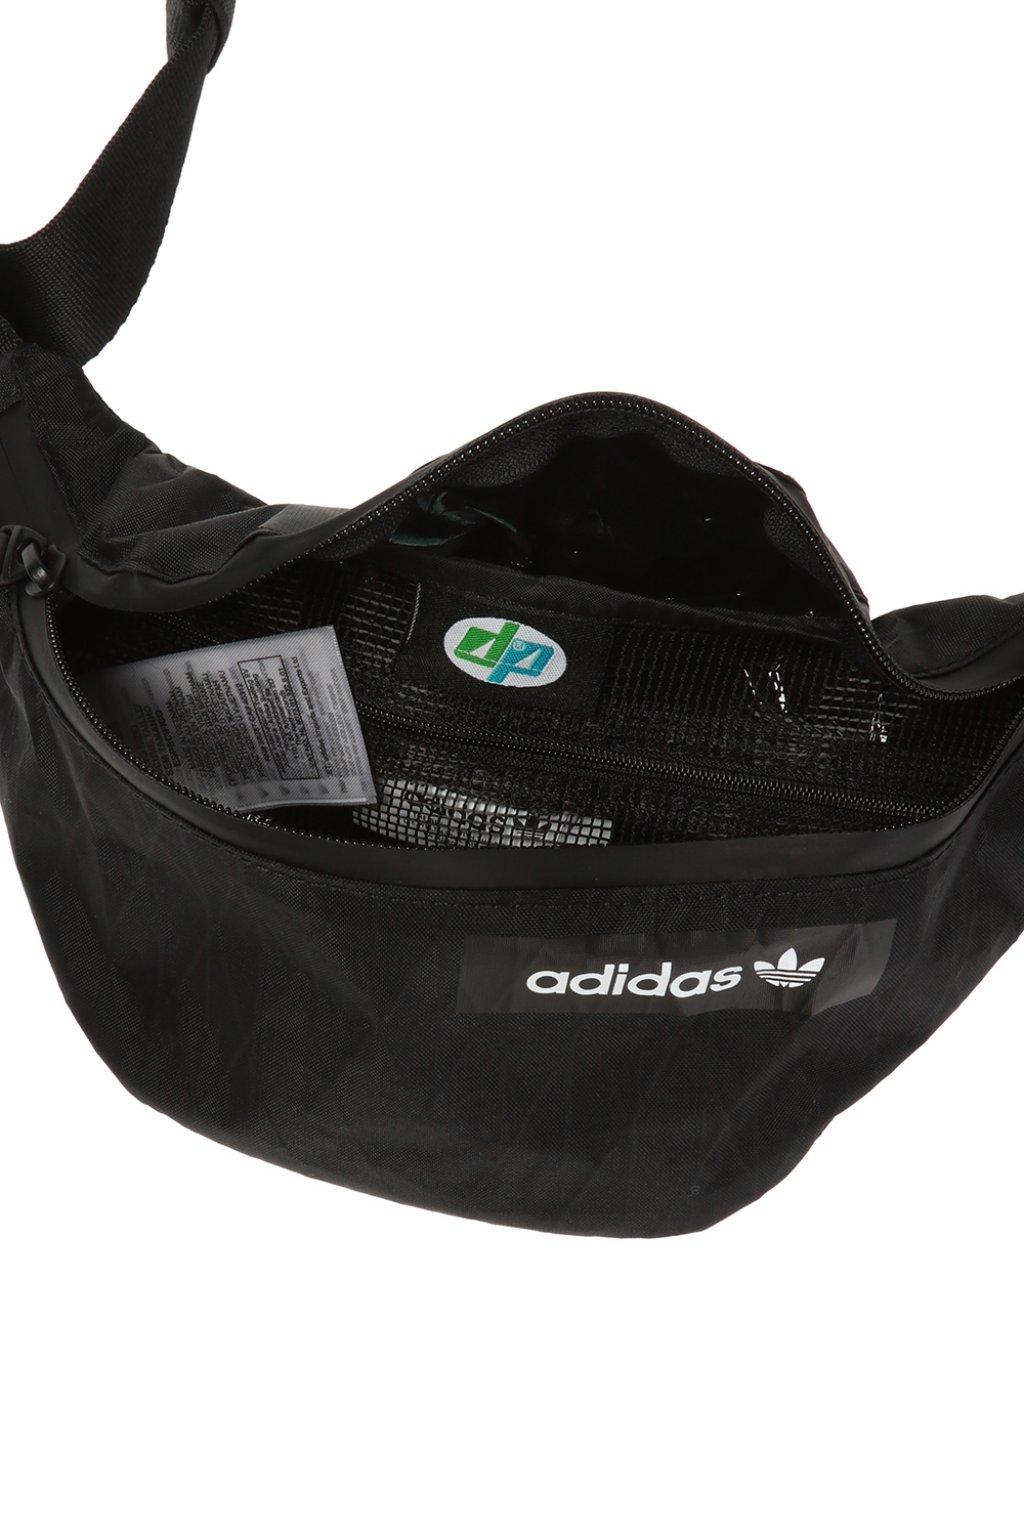 adidas Originals Synthetic Branded Belt Bag in Black for Men - Lyst